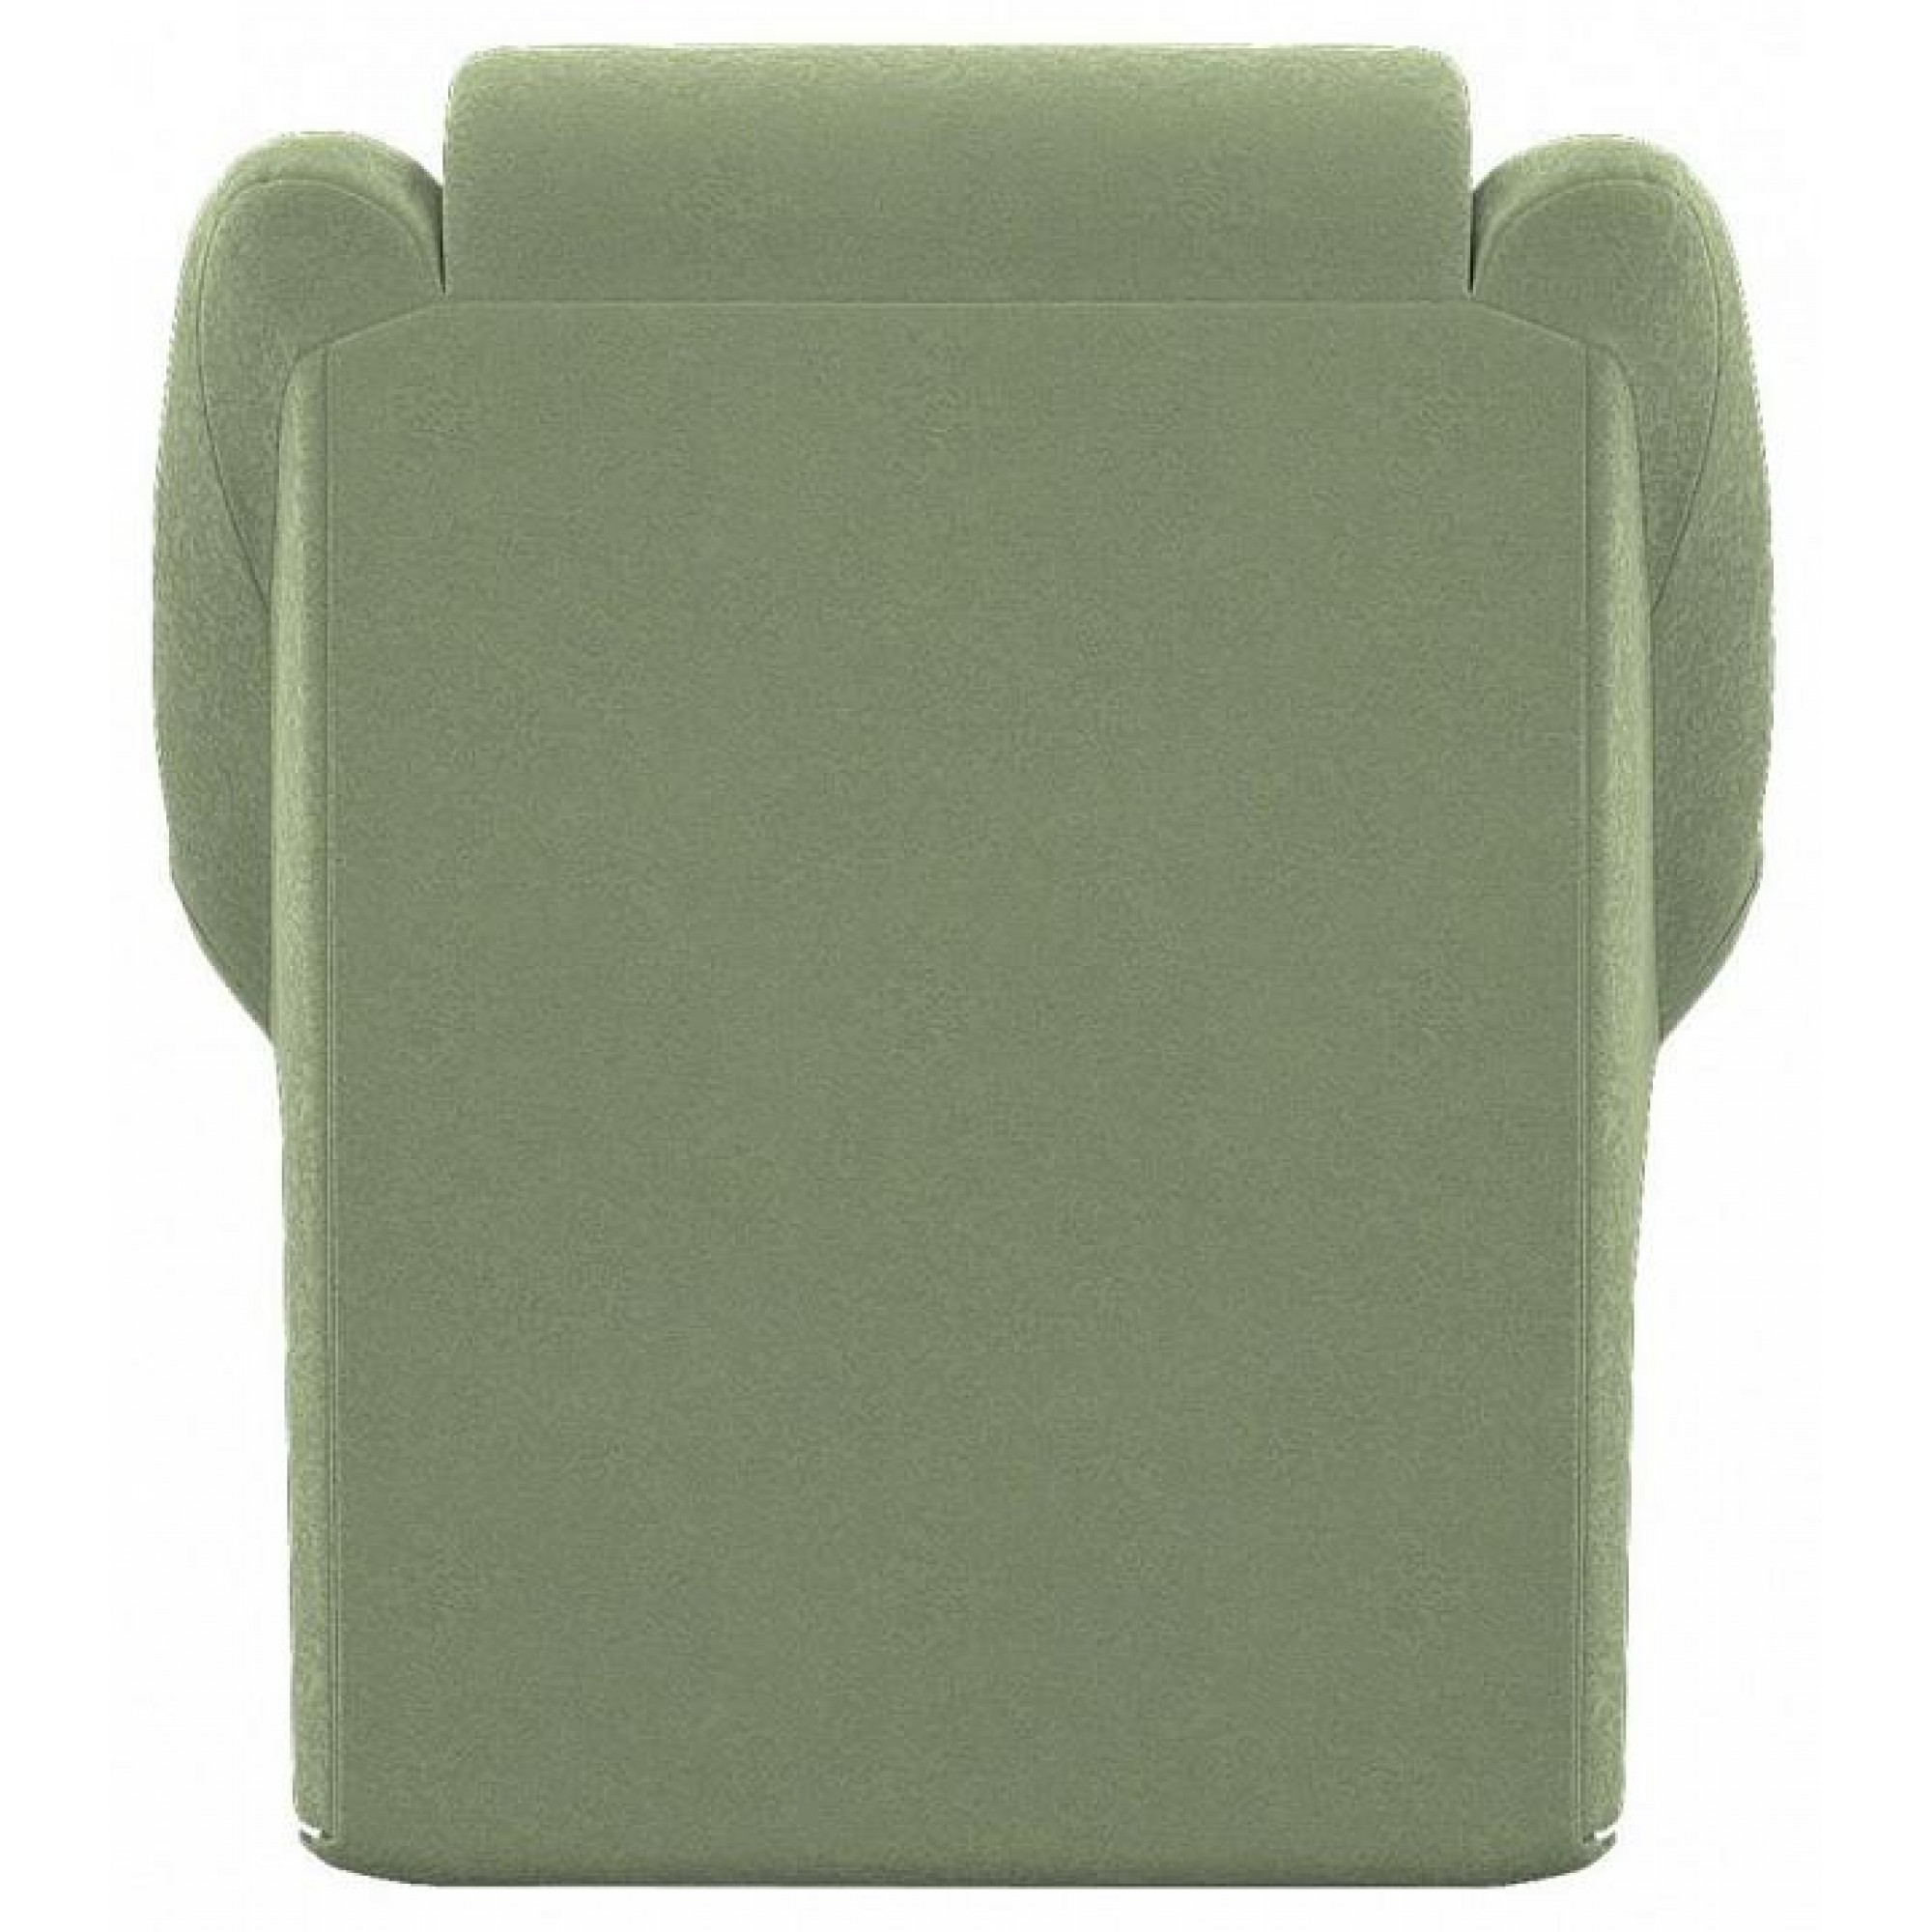 Кресло-кровать Мун зеленый ELE_2200000033703